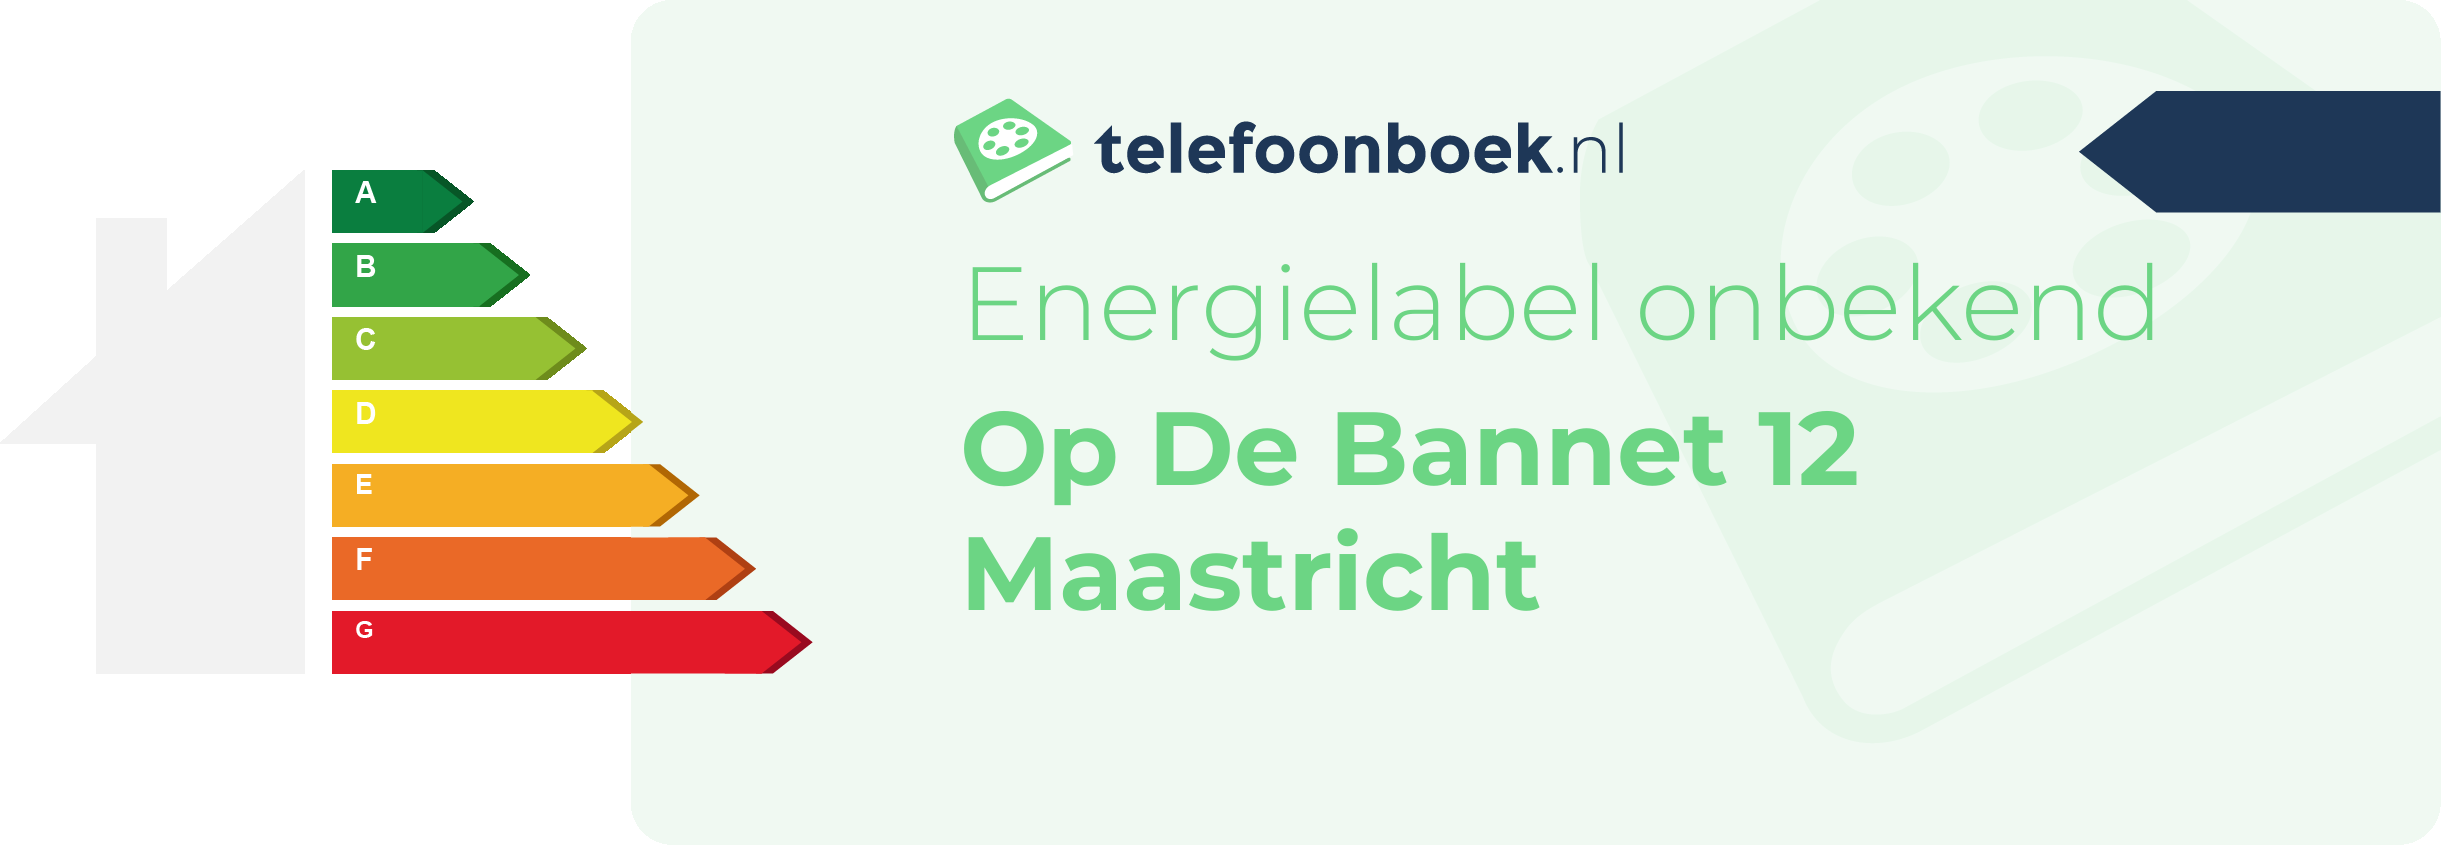 Energielabel Op De Bannet 12 Maastricht